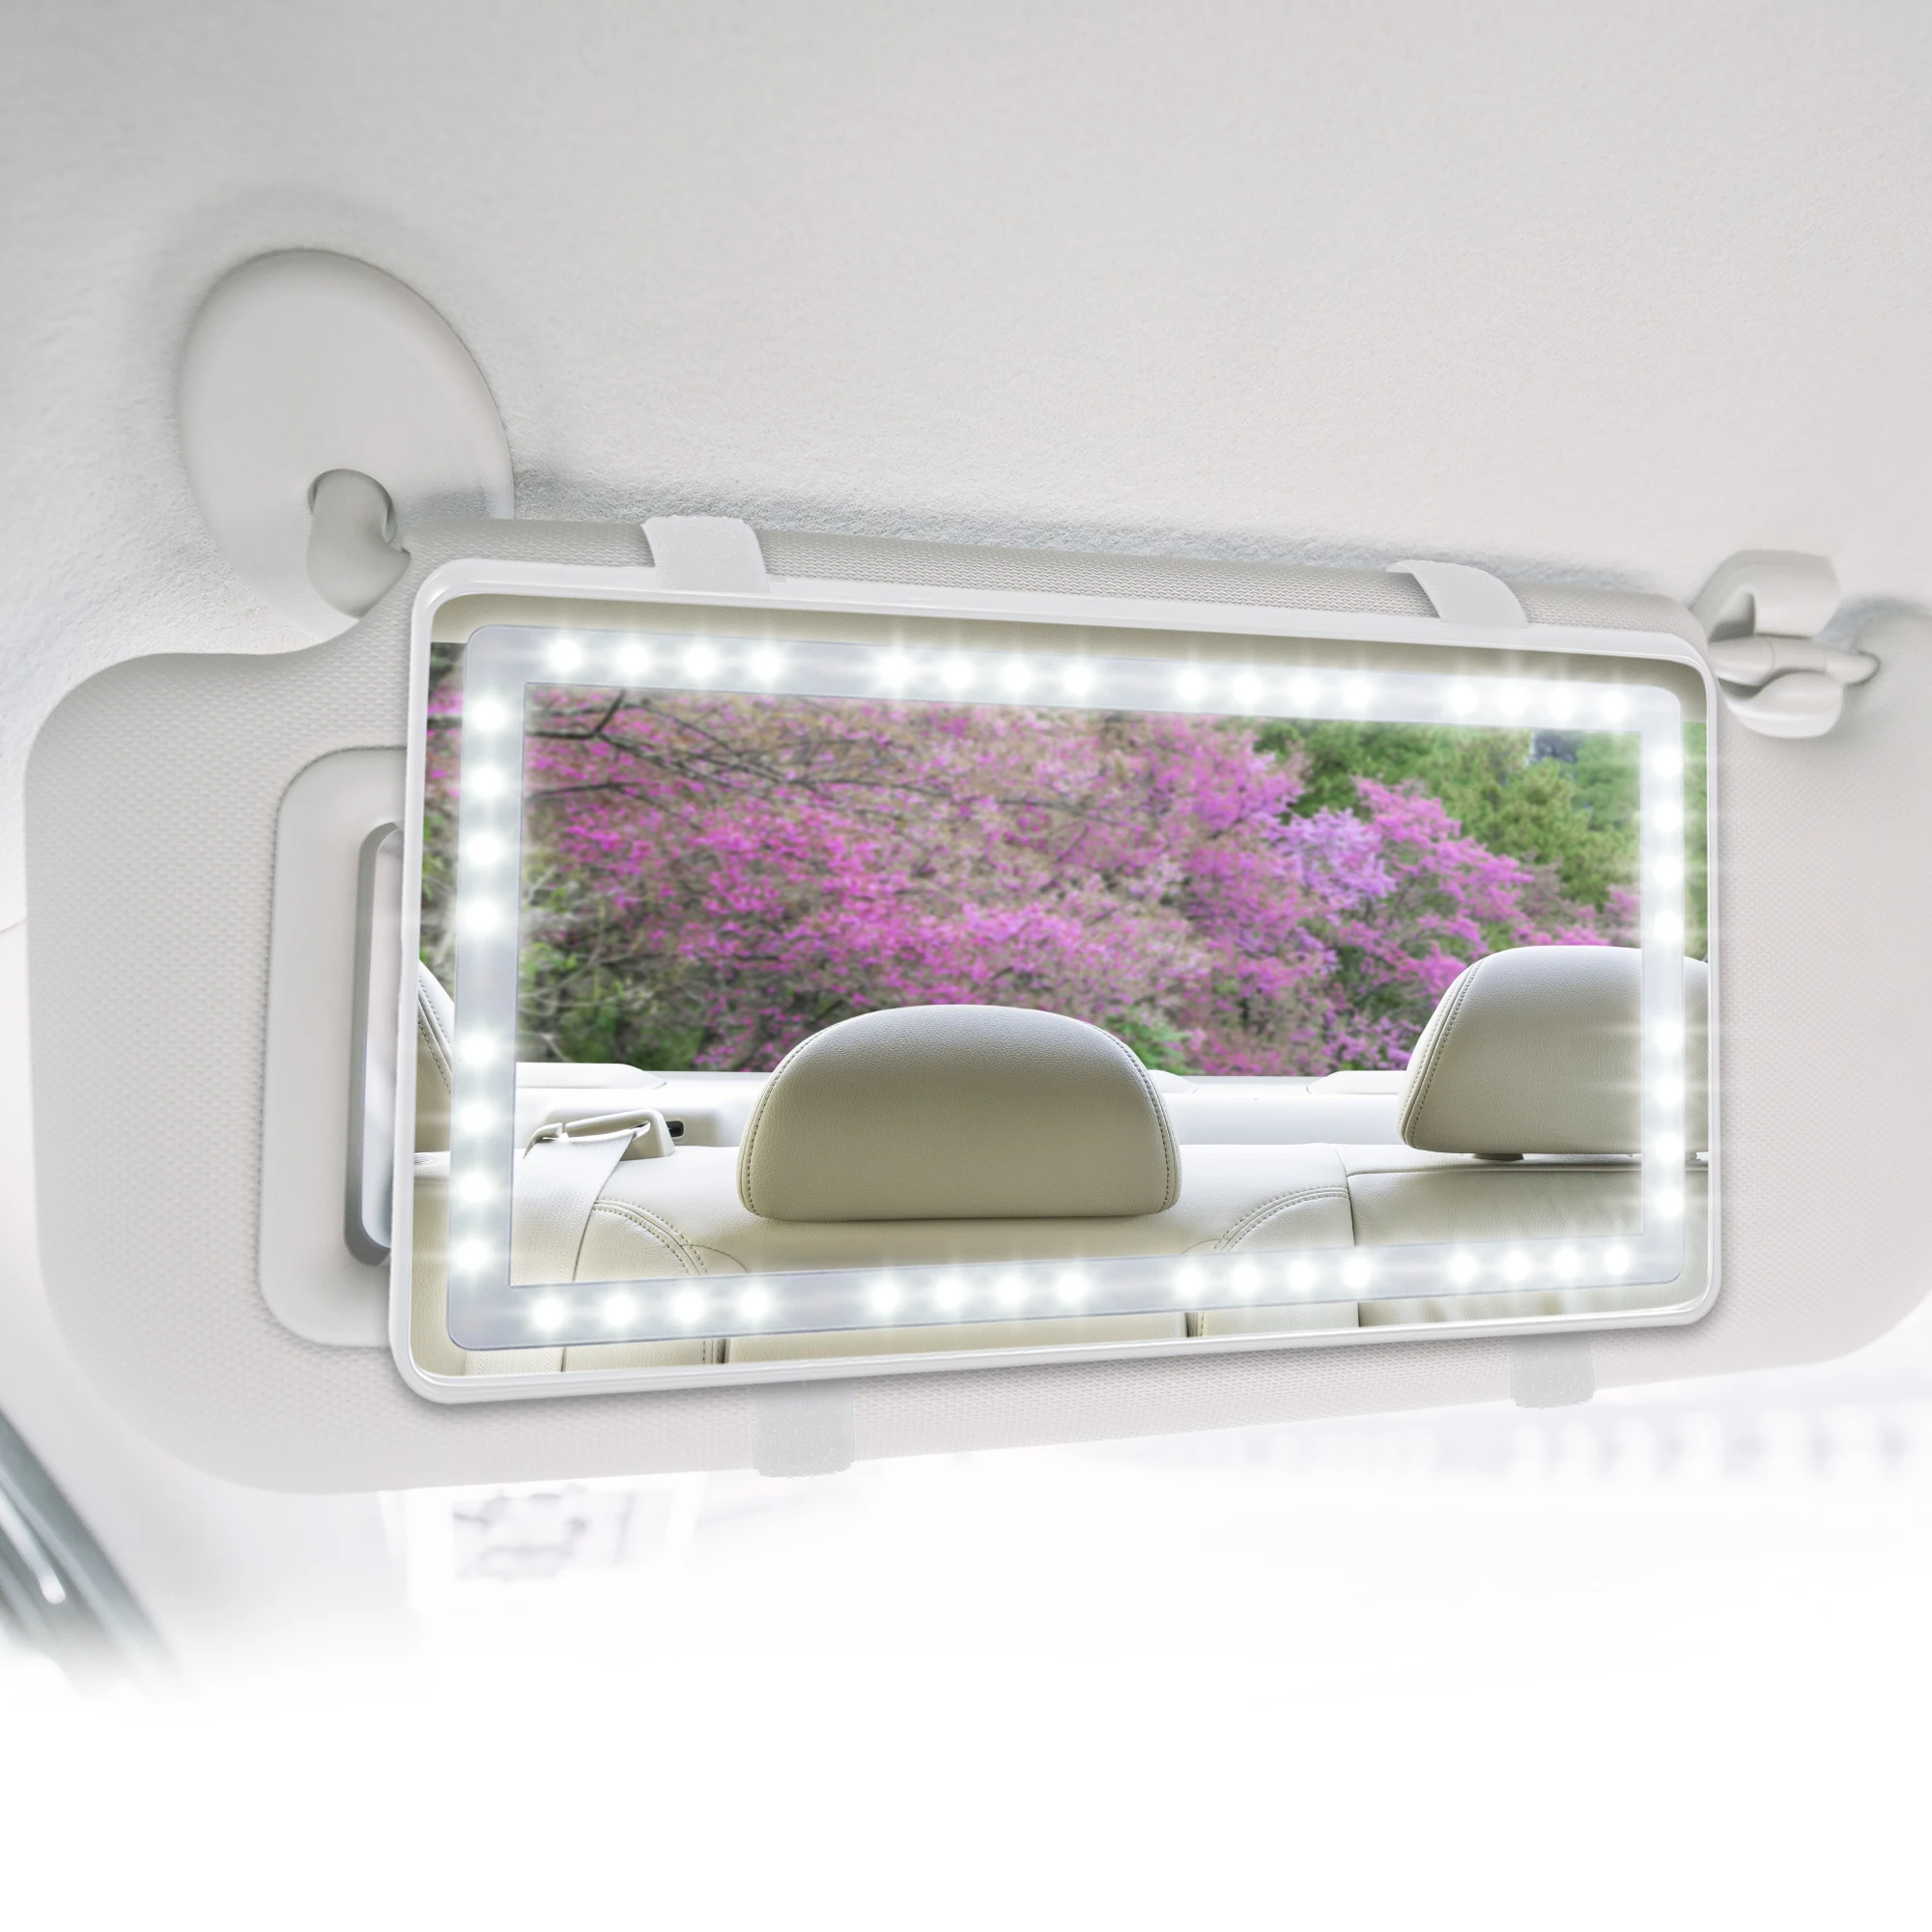 X Autochaux-Car Interior Viseira Espelho Set, 3